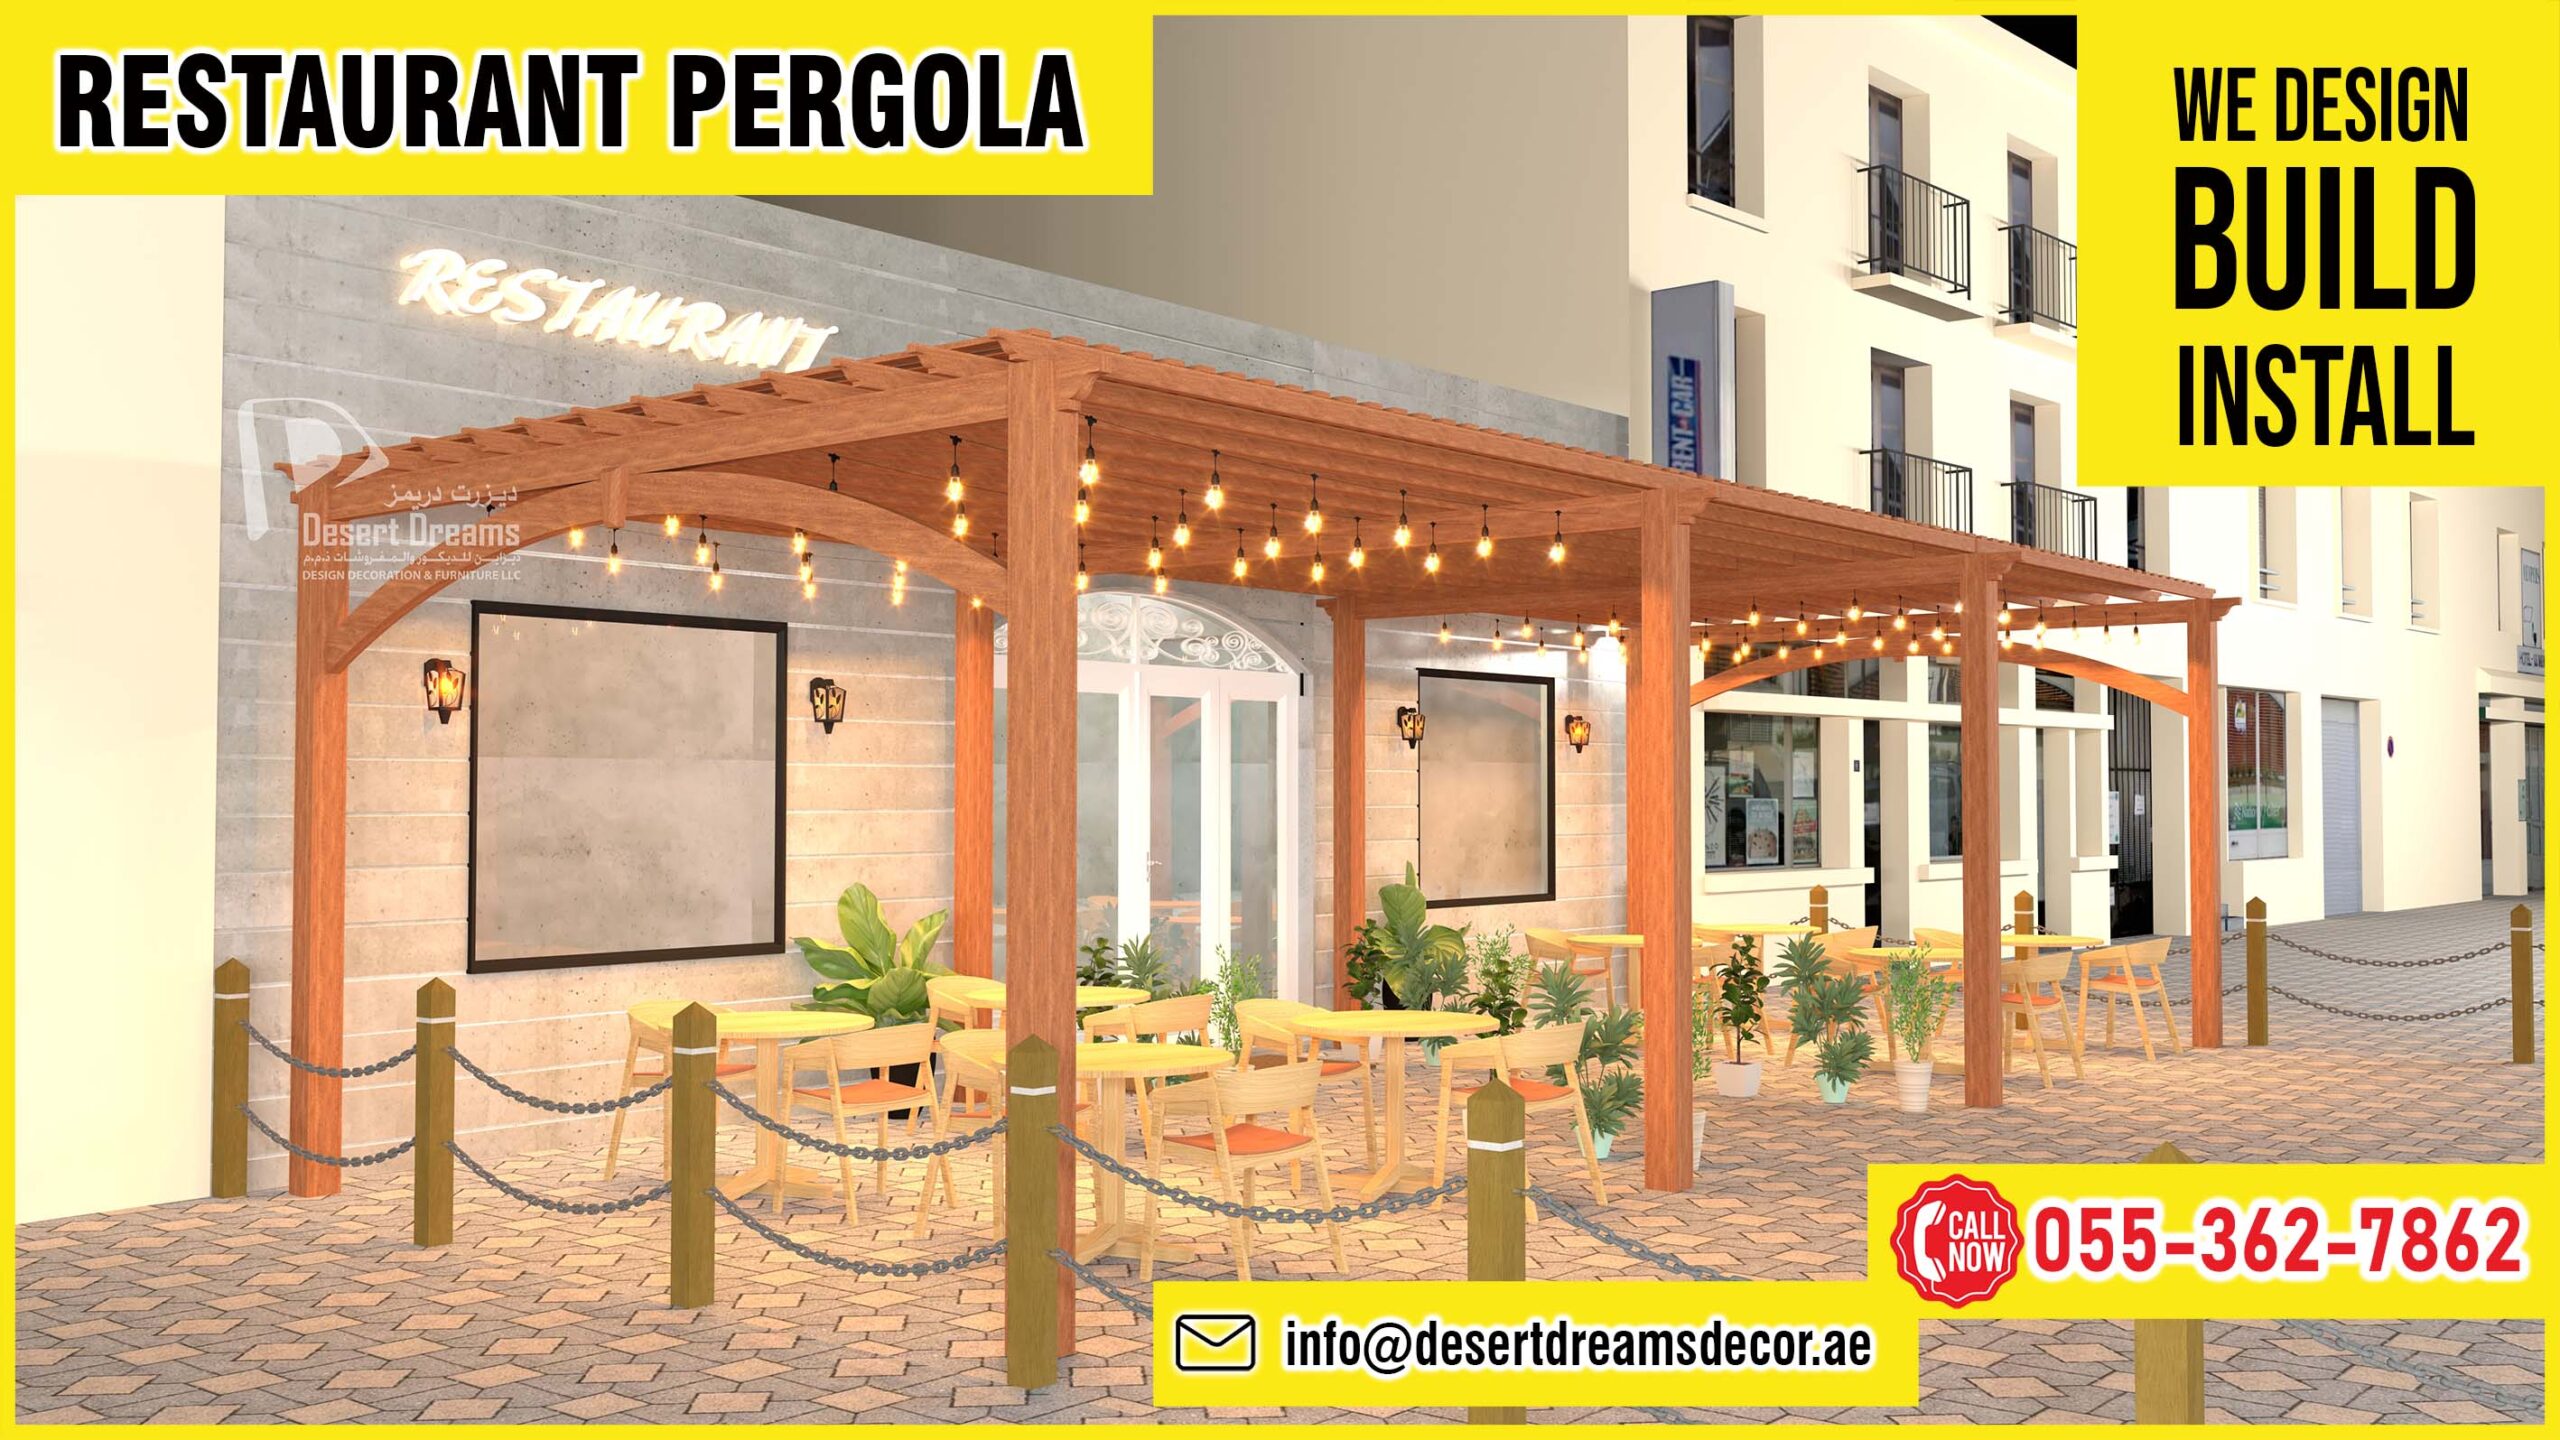 Restaurant Pergola Dubai_Restaurant Pergola Uae_Restaurant Pergola Abu Dhabi (2).jpg